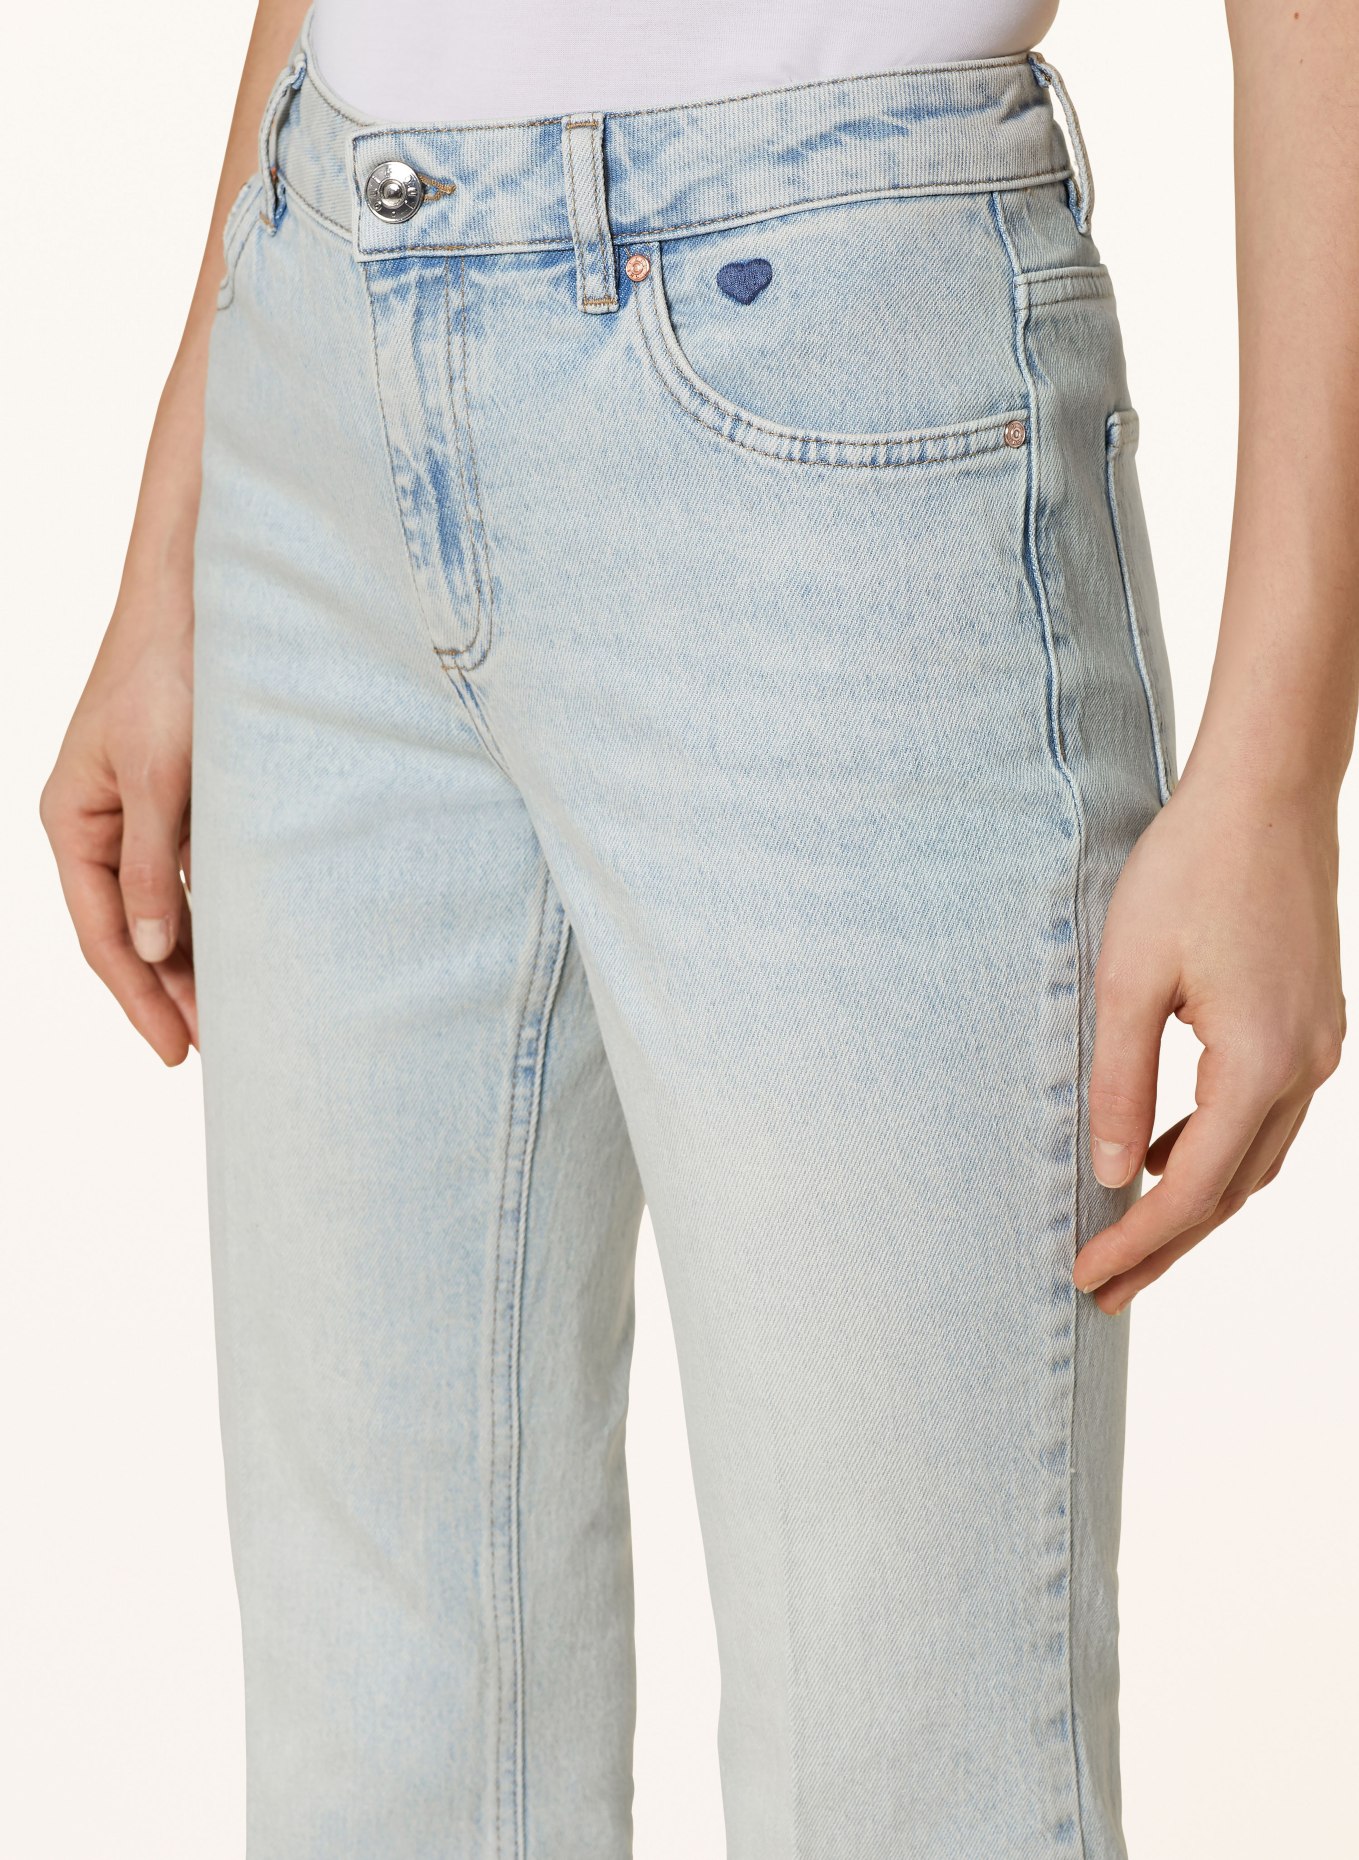 oui 7/8 jeans, Color: 5300 BLUE DENIM (Image 5)